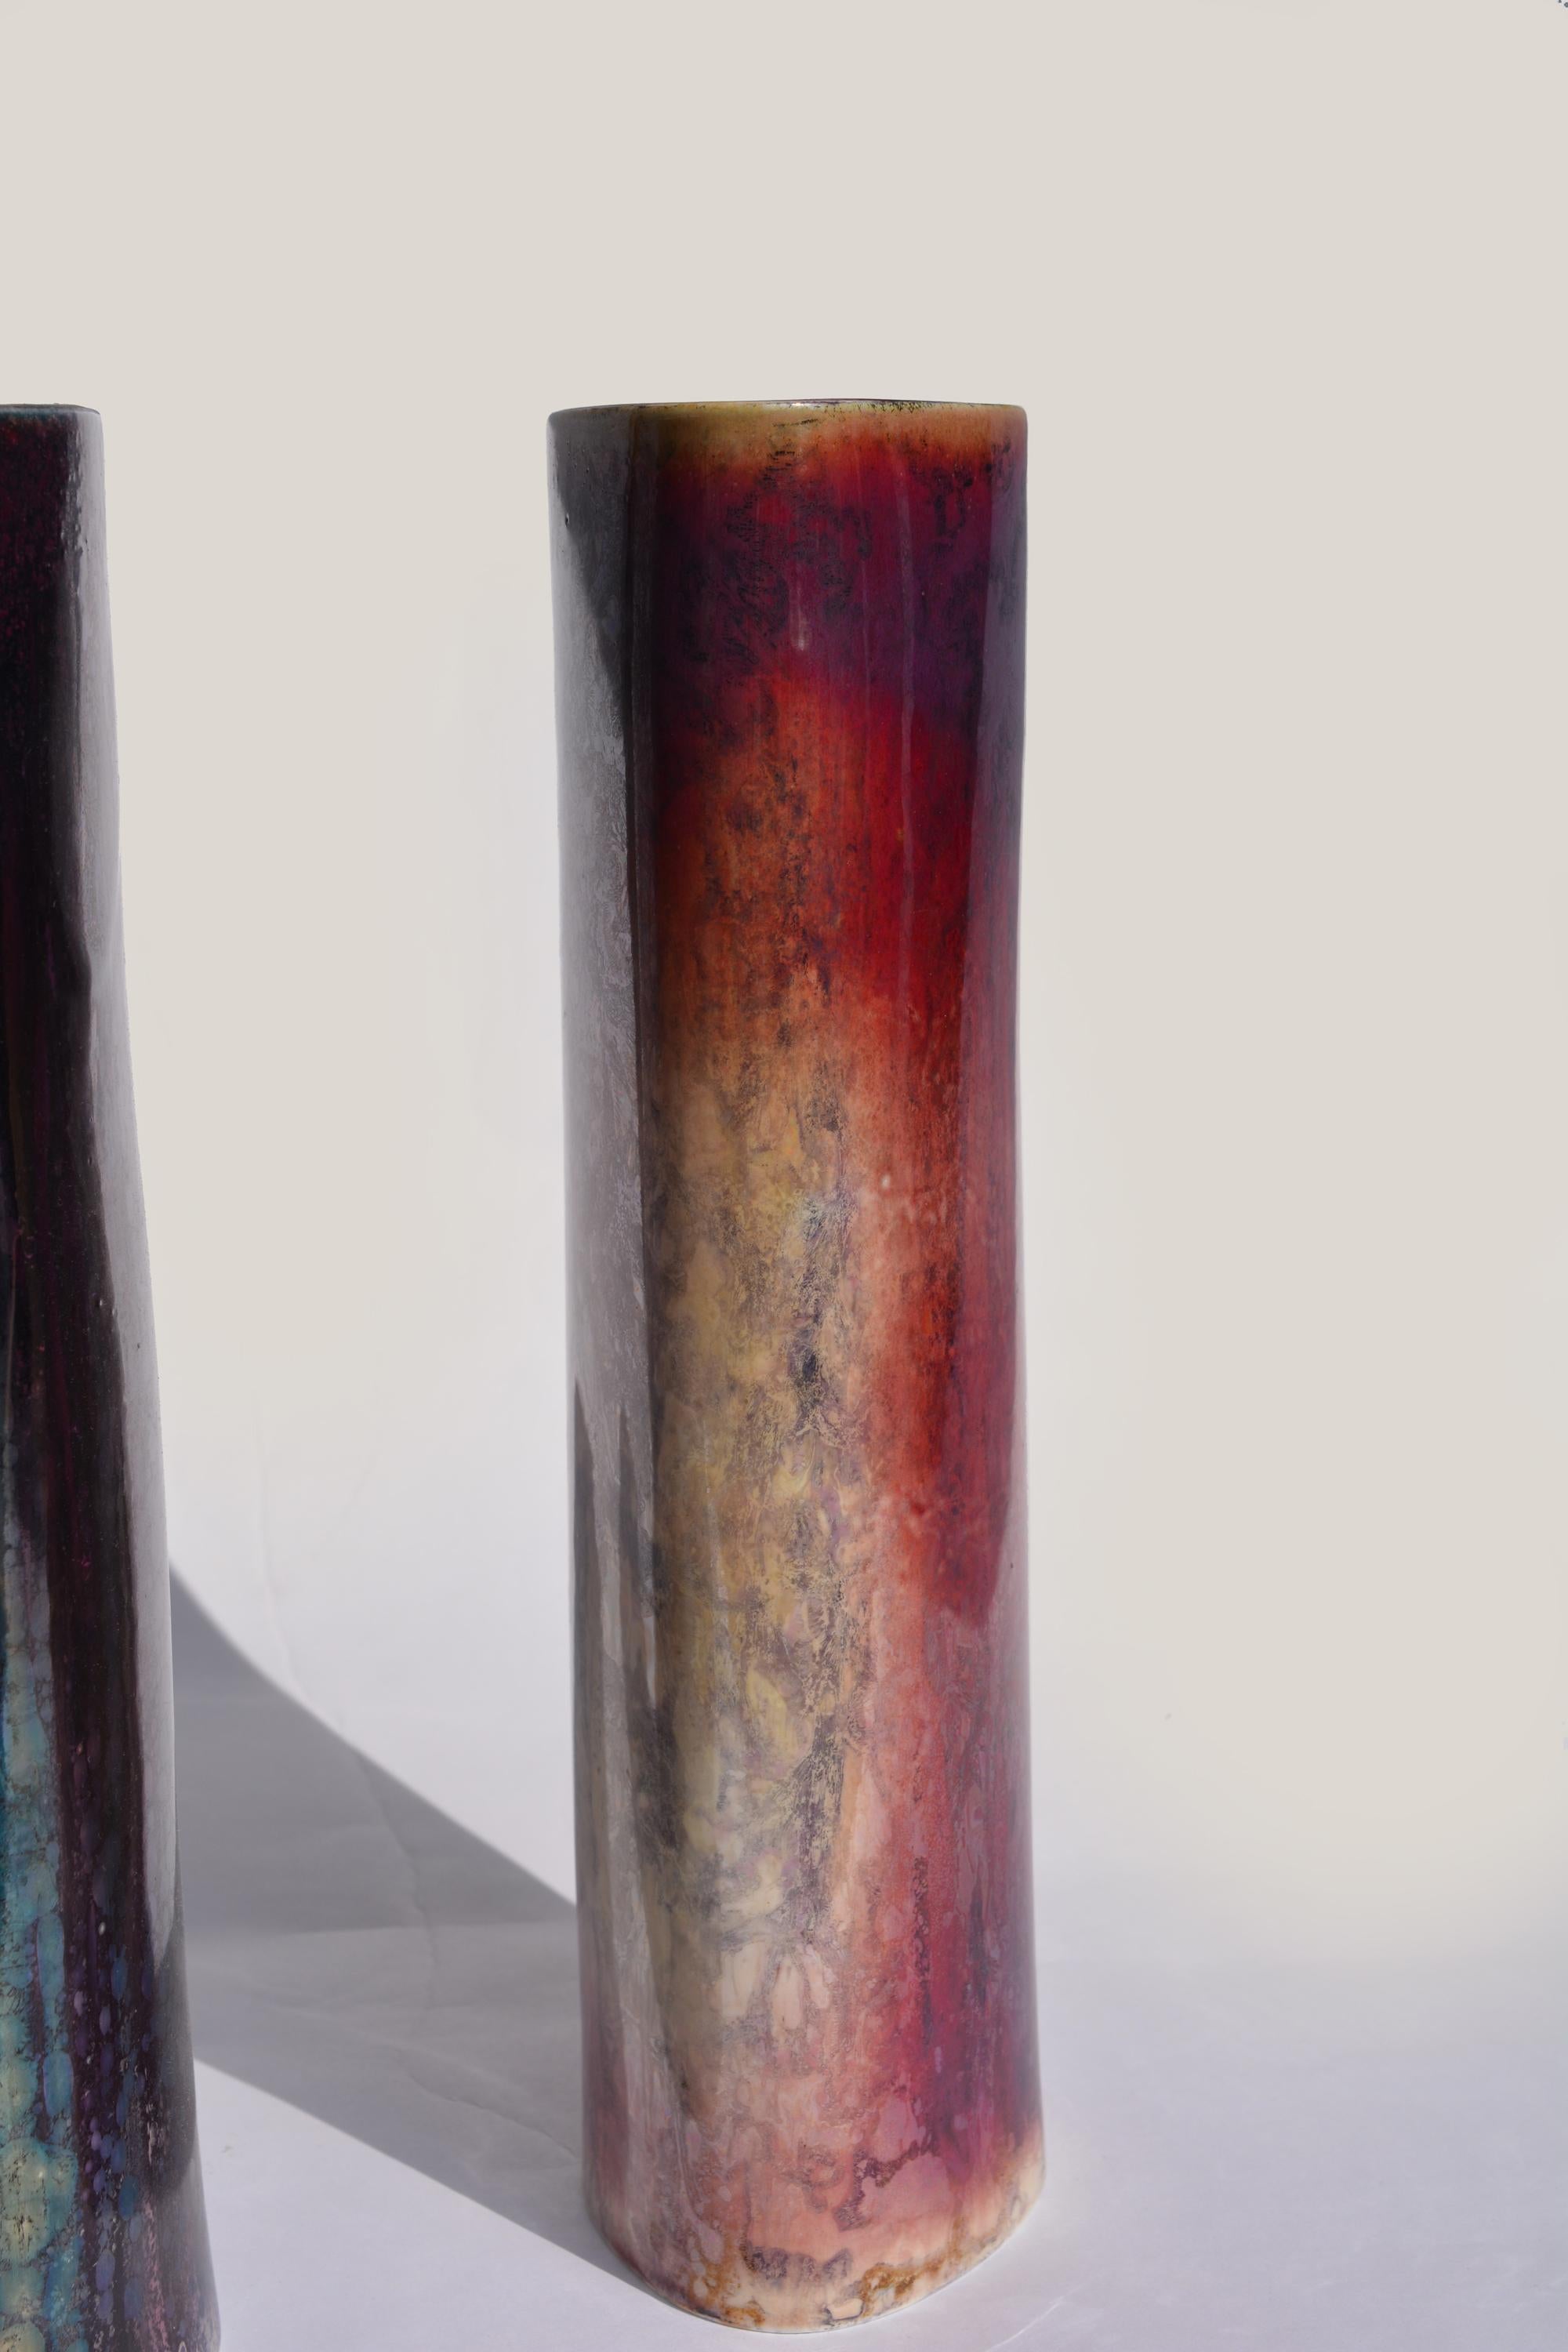 Ein Paar Vasen-Sèvres
Nationale Manufaktur von Sèvres
Frankreich, Sèvres, 1986.
Einzigartige Stücke

Paar ovale Porzellanvasen in Rollenform, jede mit einem einzigartigen
dekor aus feinen Kristallisationen und schillernden Farbtönen.
Diese